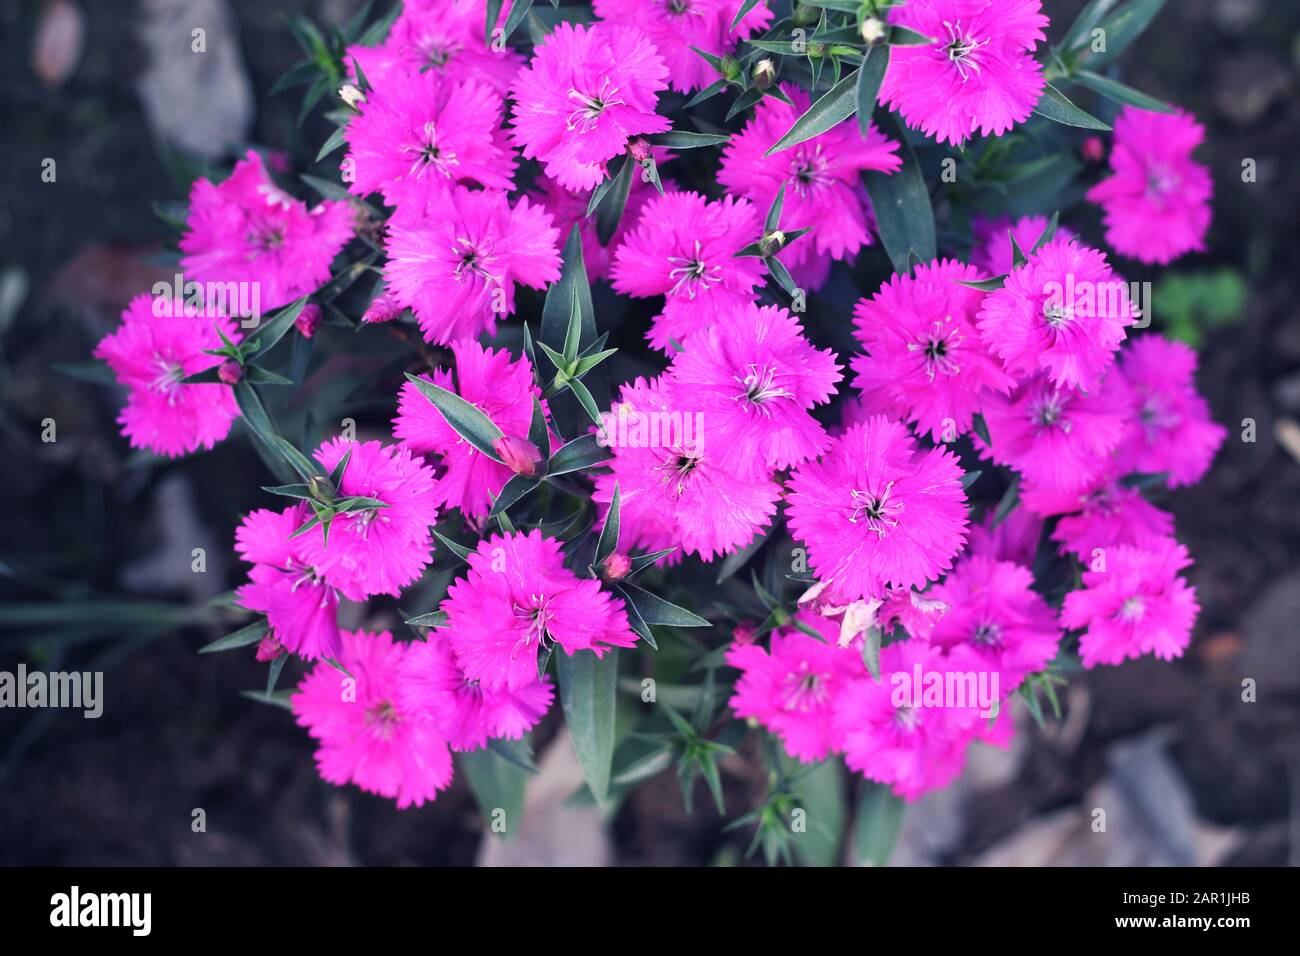 Rosa e bianco fiore gillyflower garofano flowers.gillyflower è la garofano o una pianta simile del genere Dianthus.Bright rosso selvaggio Dianthus b Foto Stock